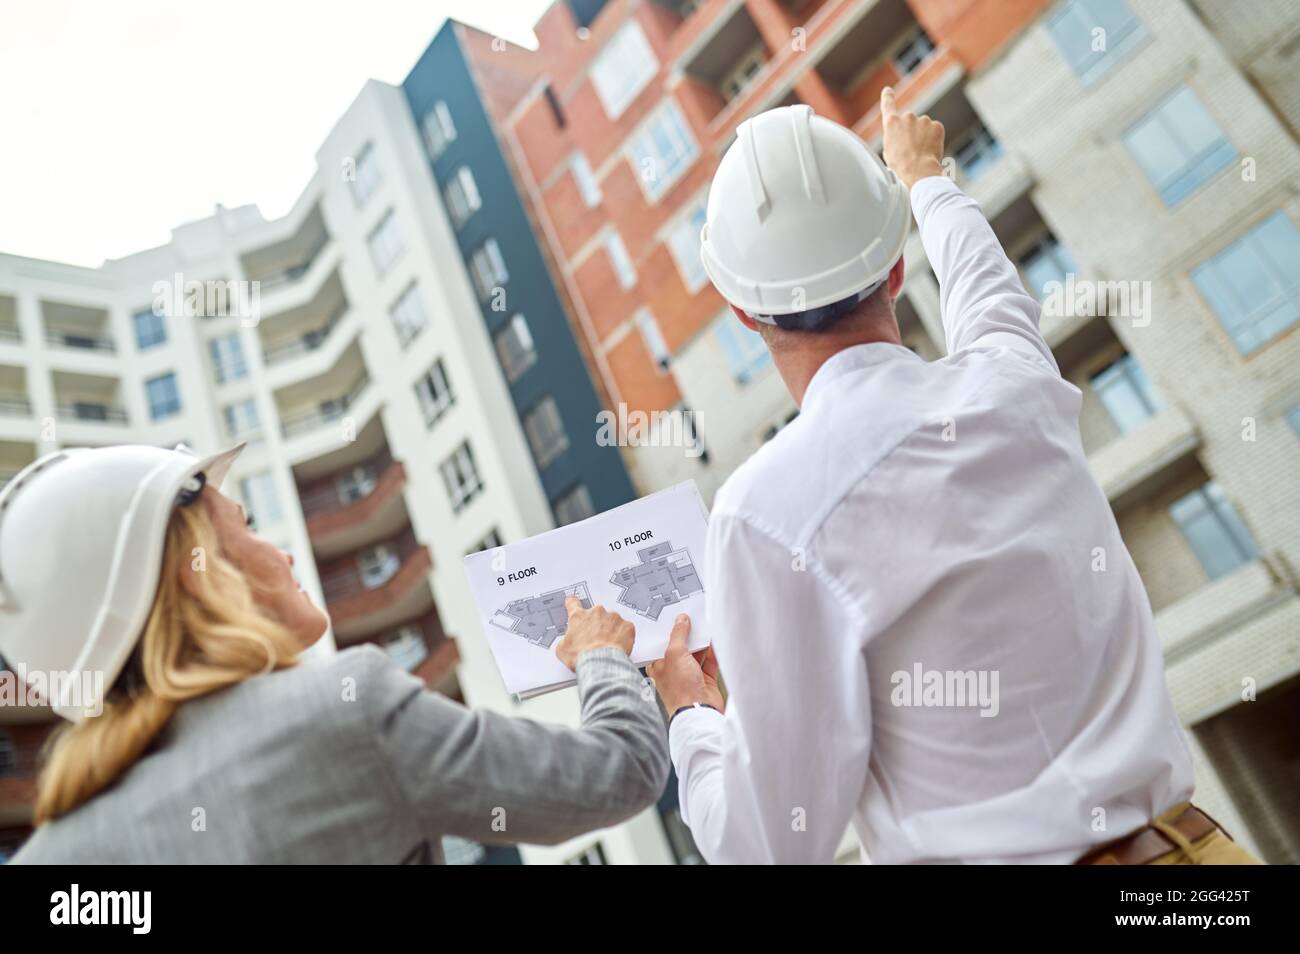 Deux collègues caucasiens inspectant ensemble un objet de construction Banque D'Images